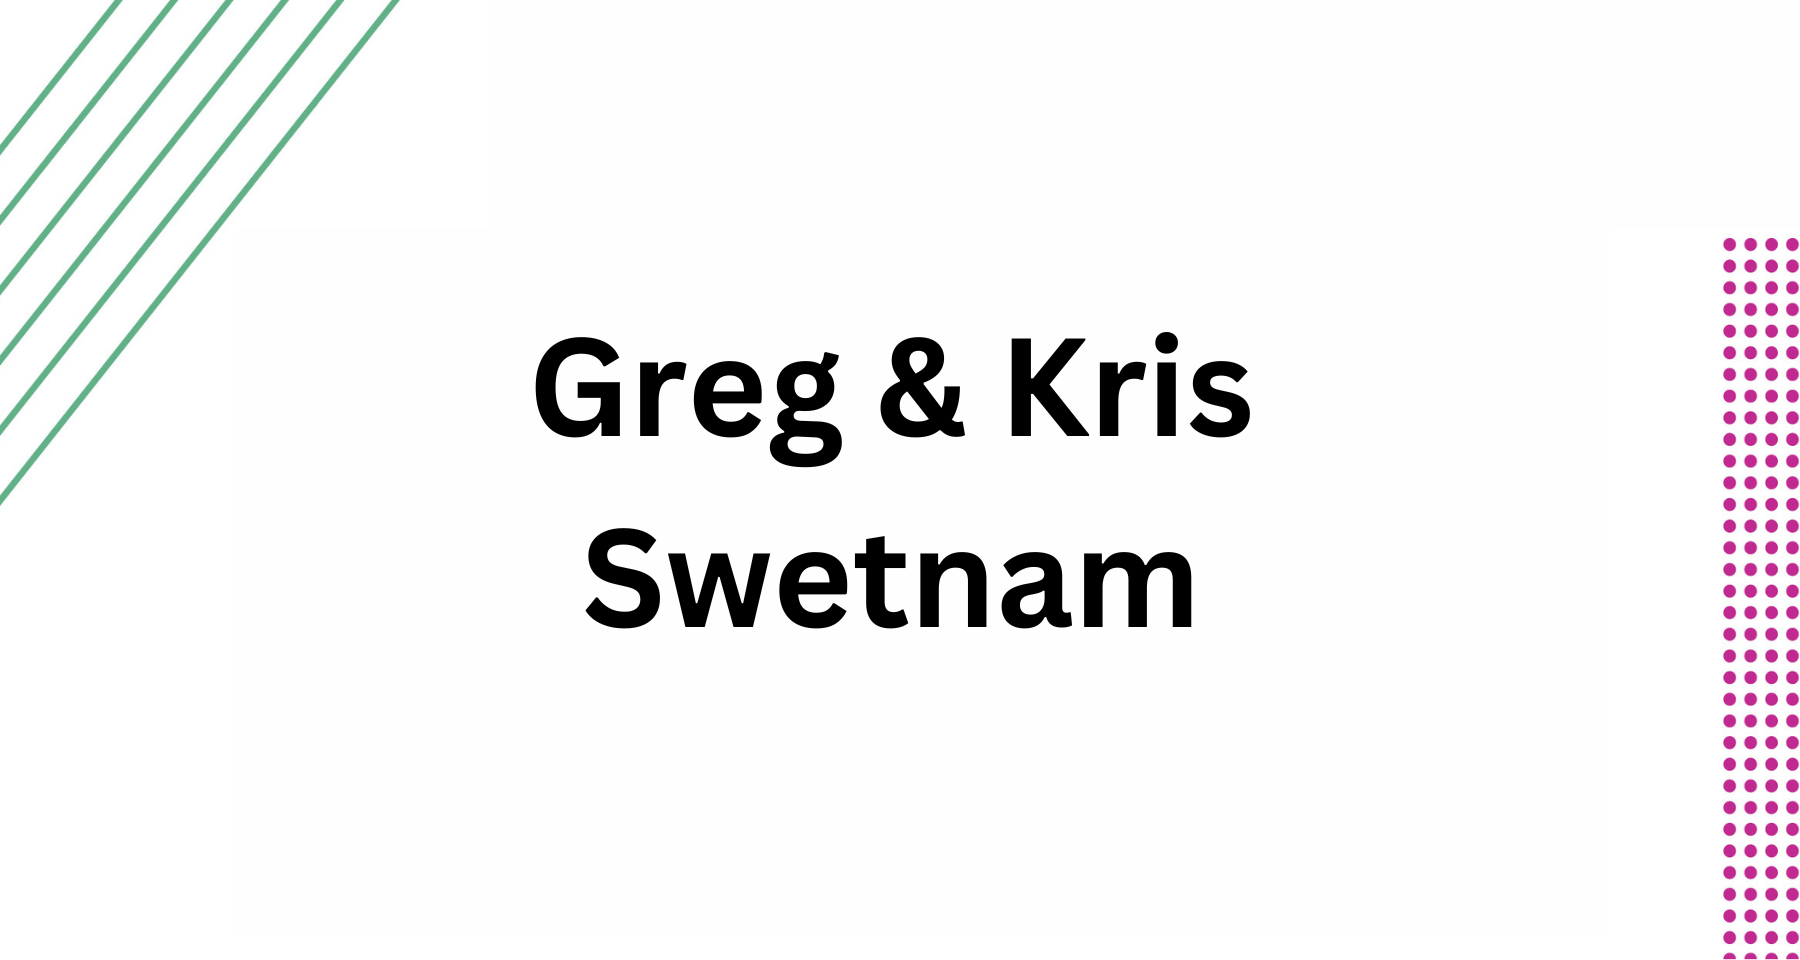 Greg & Kris Swetnam